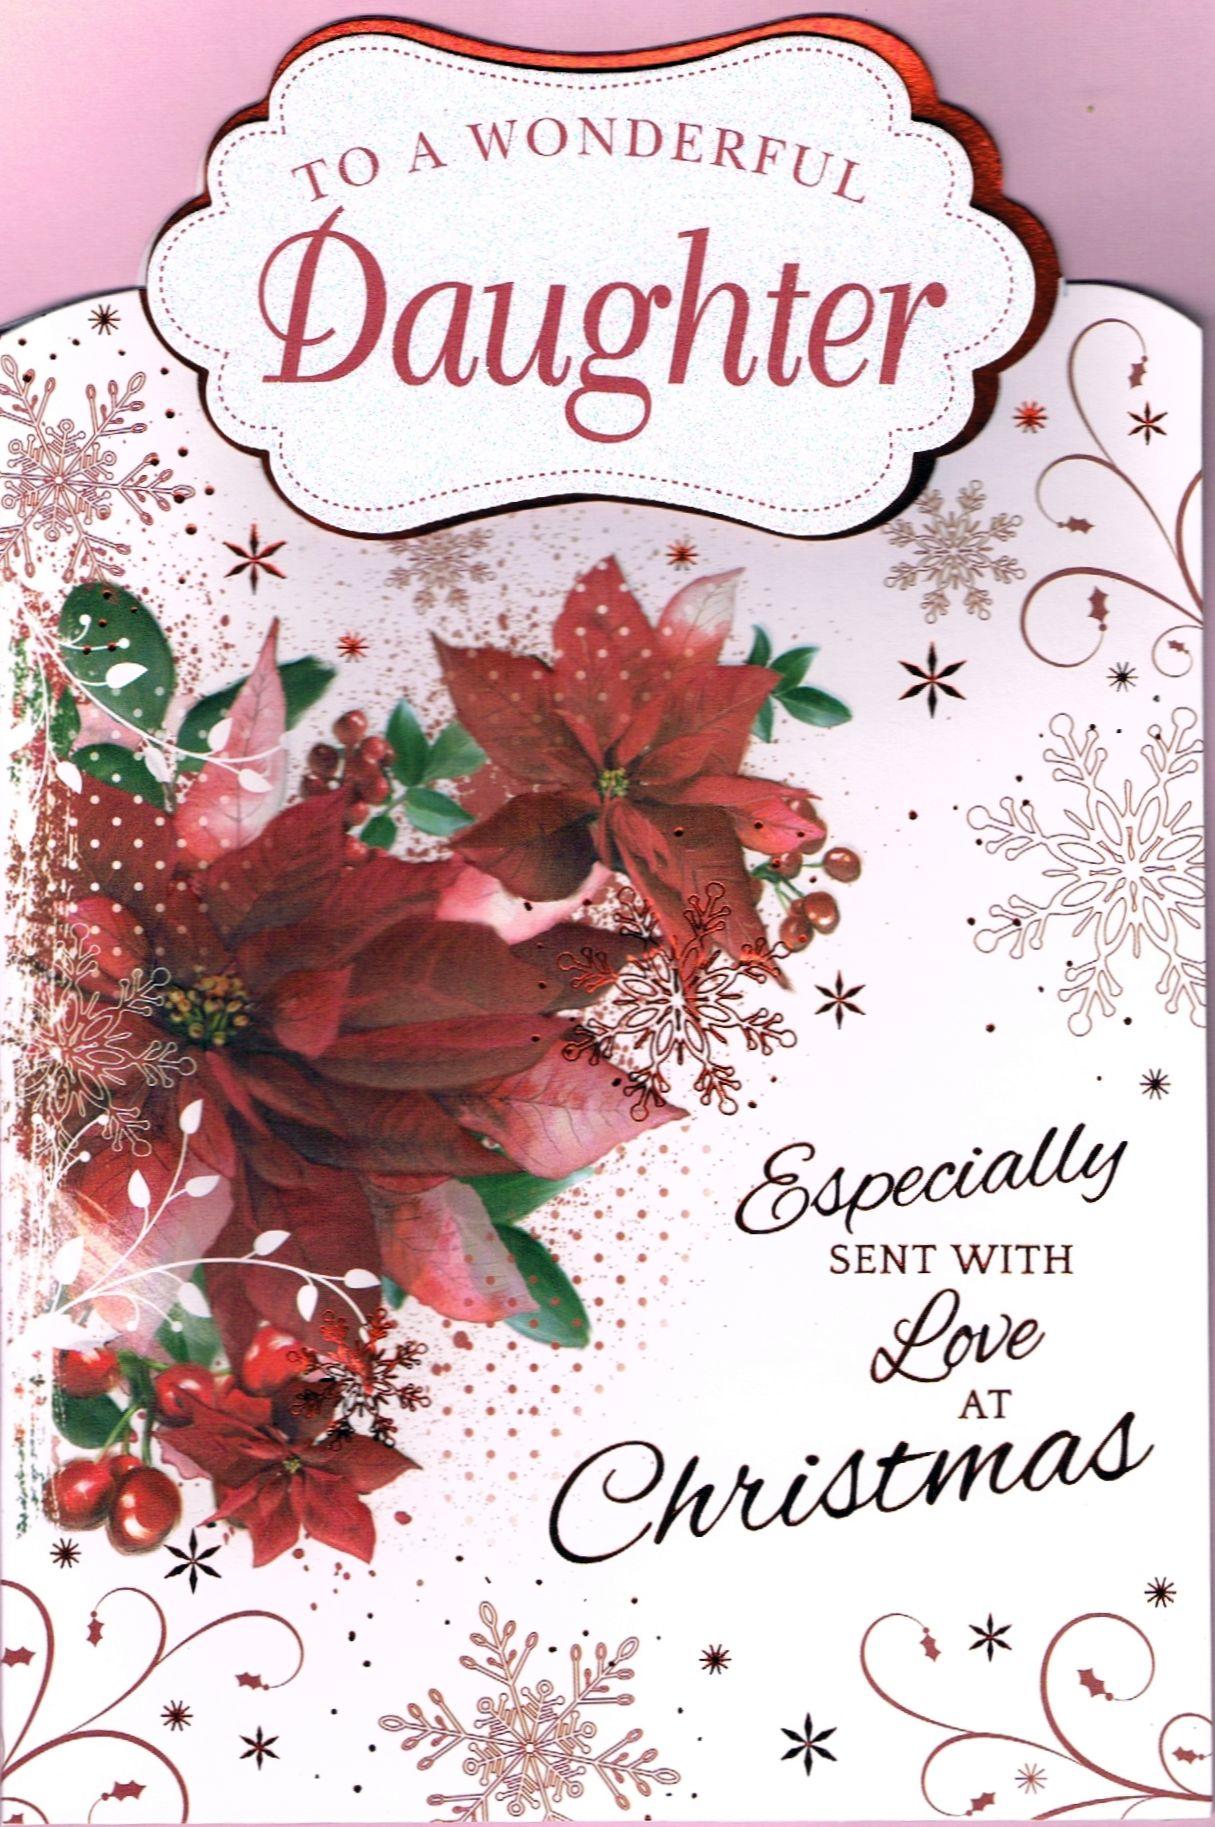 daughter-christmas-card-ubicaciondepersonas-cdmx-gob-mx